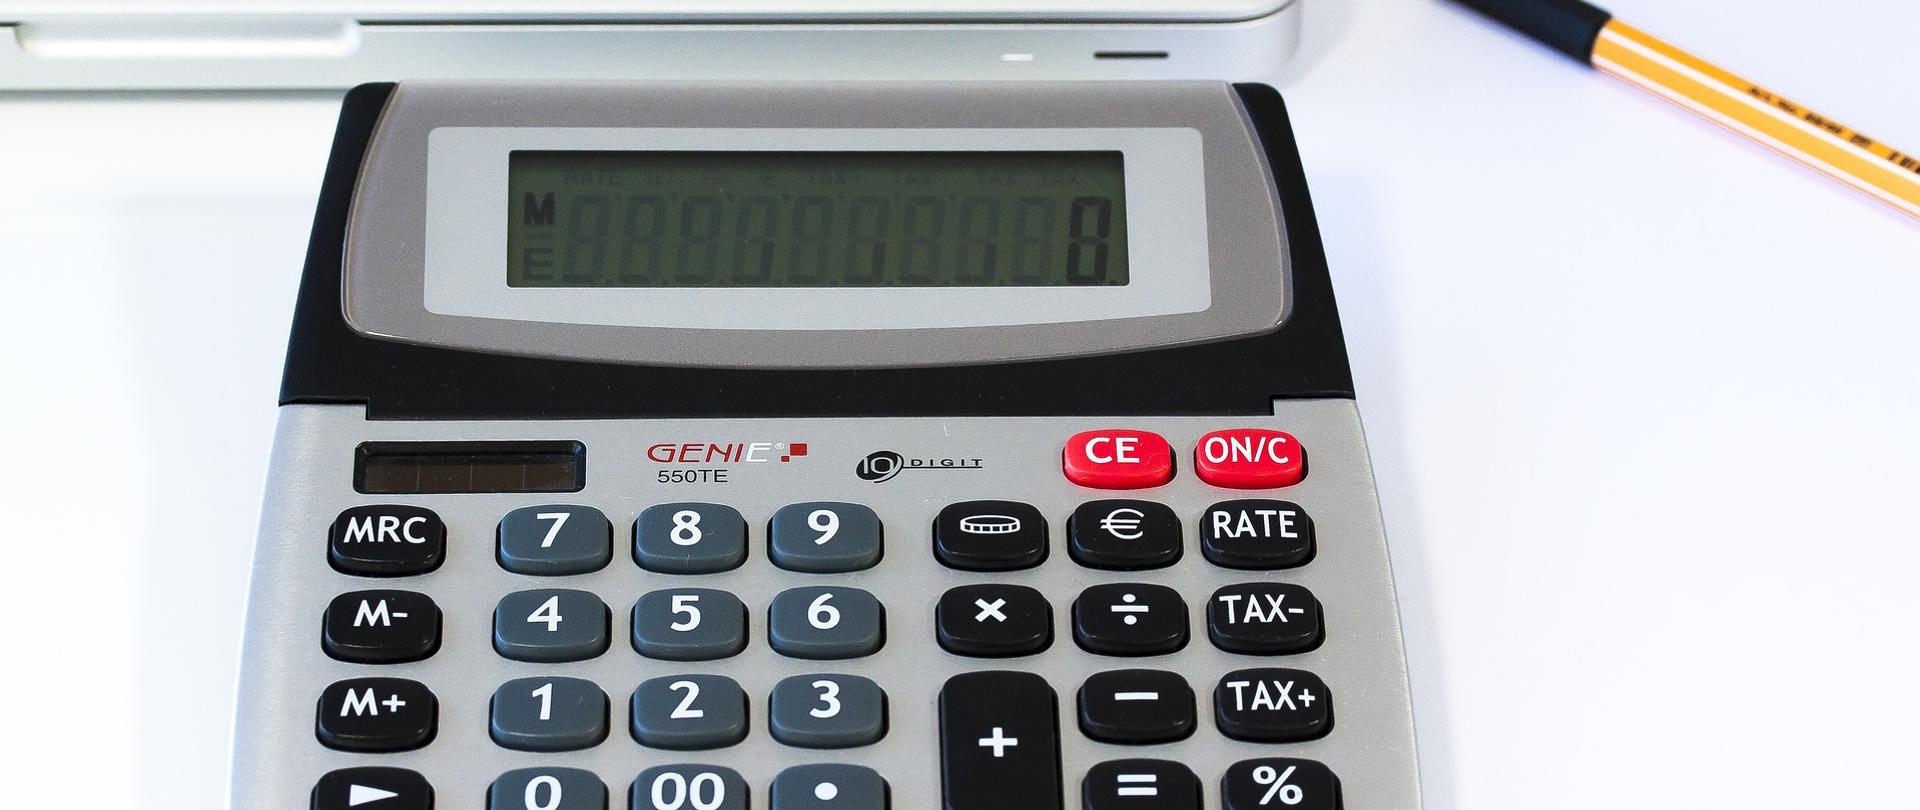 Zdjęcie przedstawia kalkulator elektroniczny